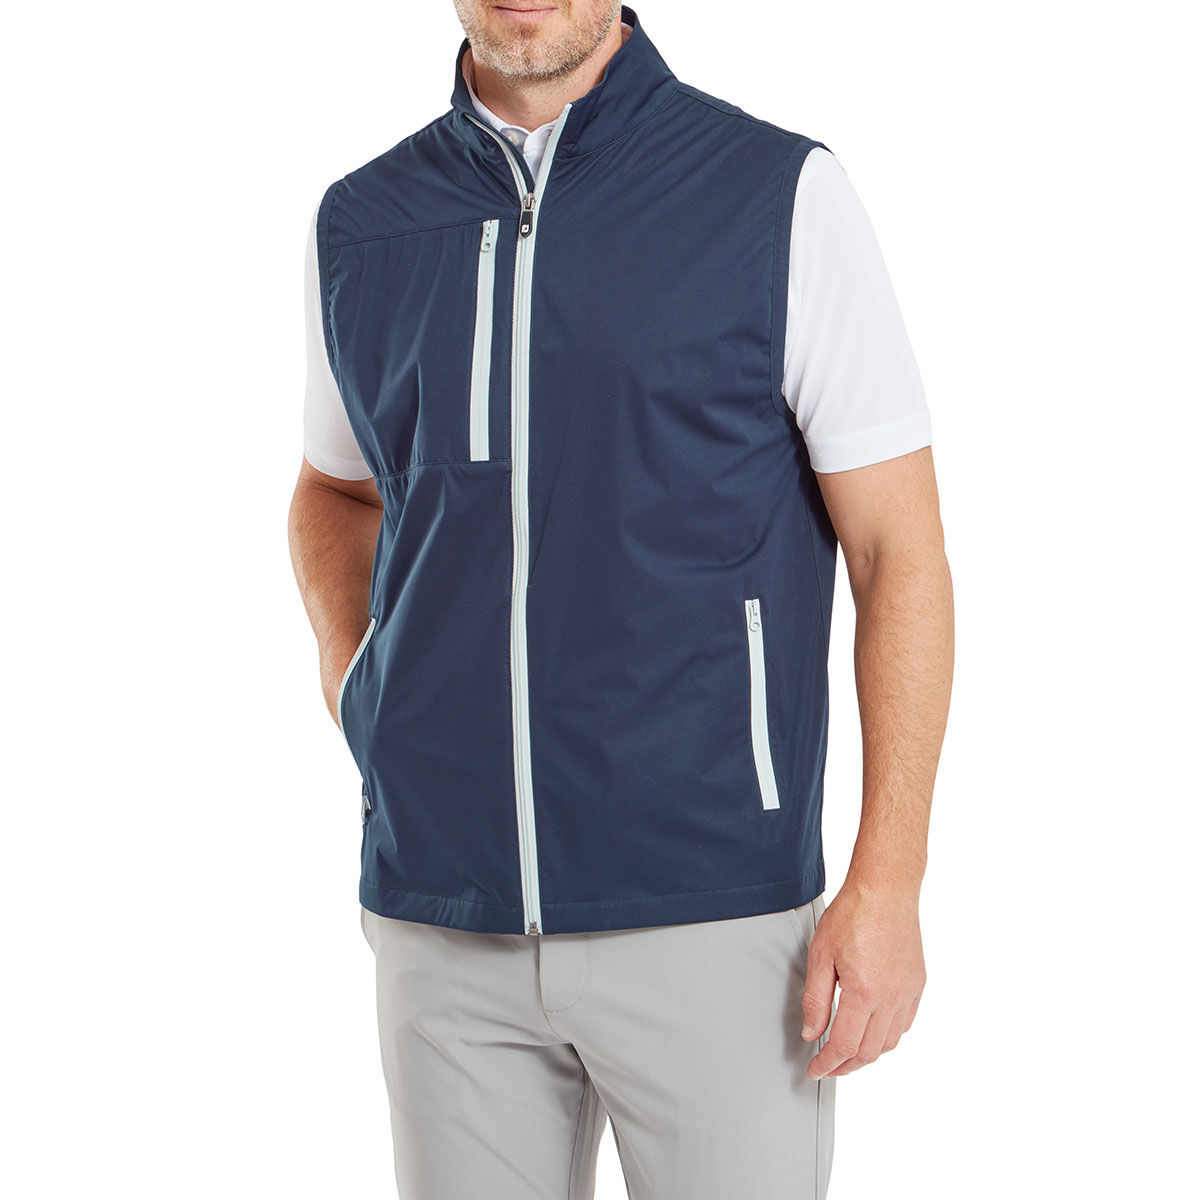 FootJoy Men’s Tempo Series Softshell Golf Vest, Mens, Navy blue, Small | American Golf